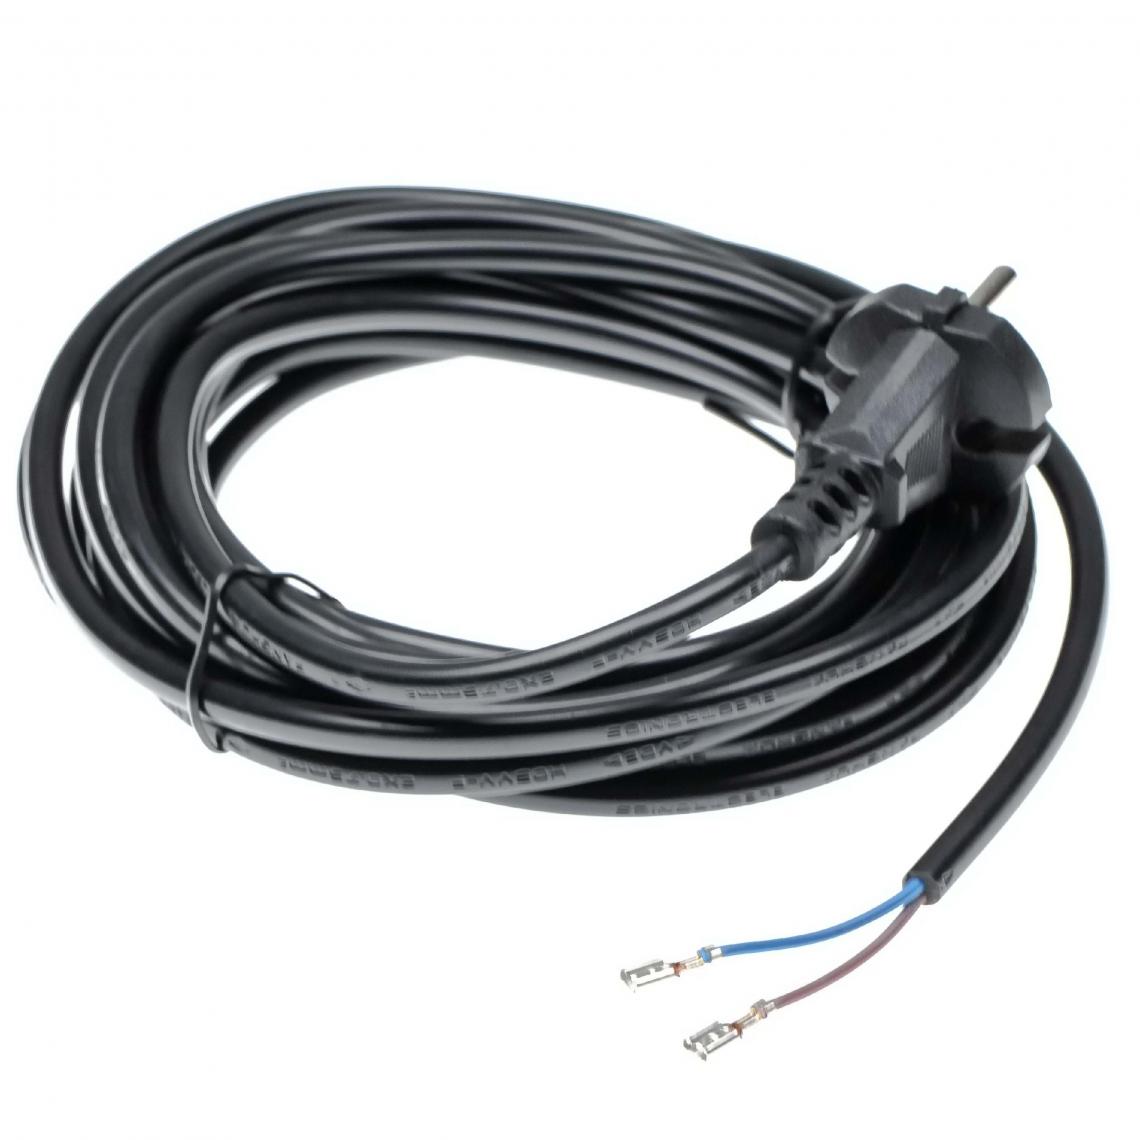 Vhbw - vhbw Câble électrique compatible avec Philips Compact, Expression, FC, FC9150, FC9199, HR aspirateurs - 6 m, 4000 W - Accessoire entretien des sols